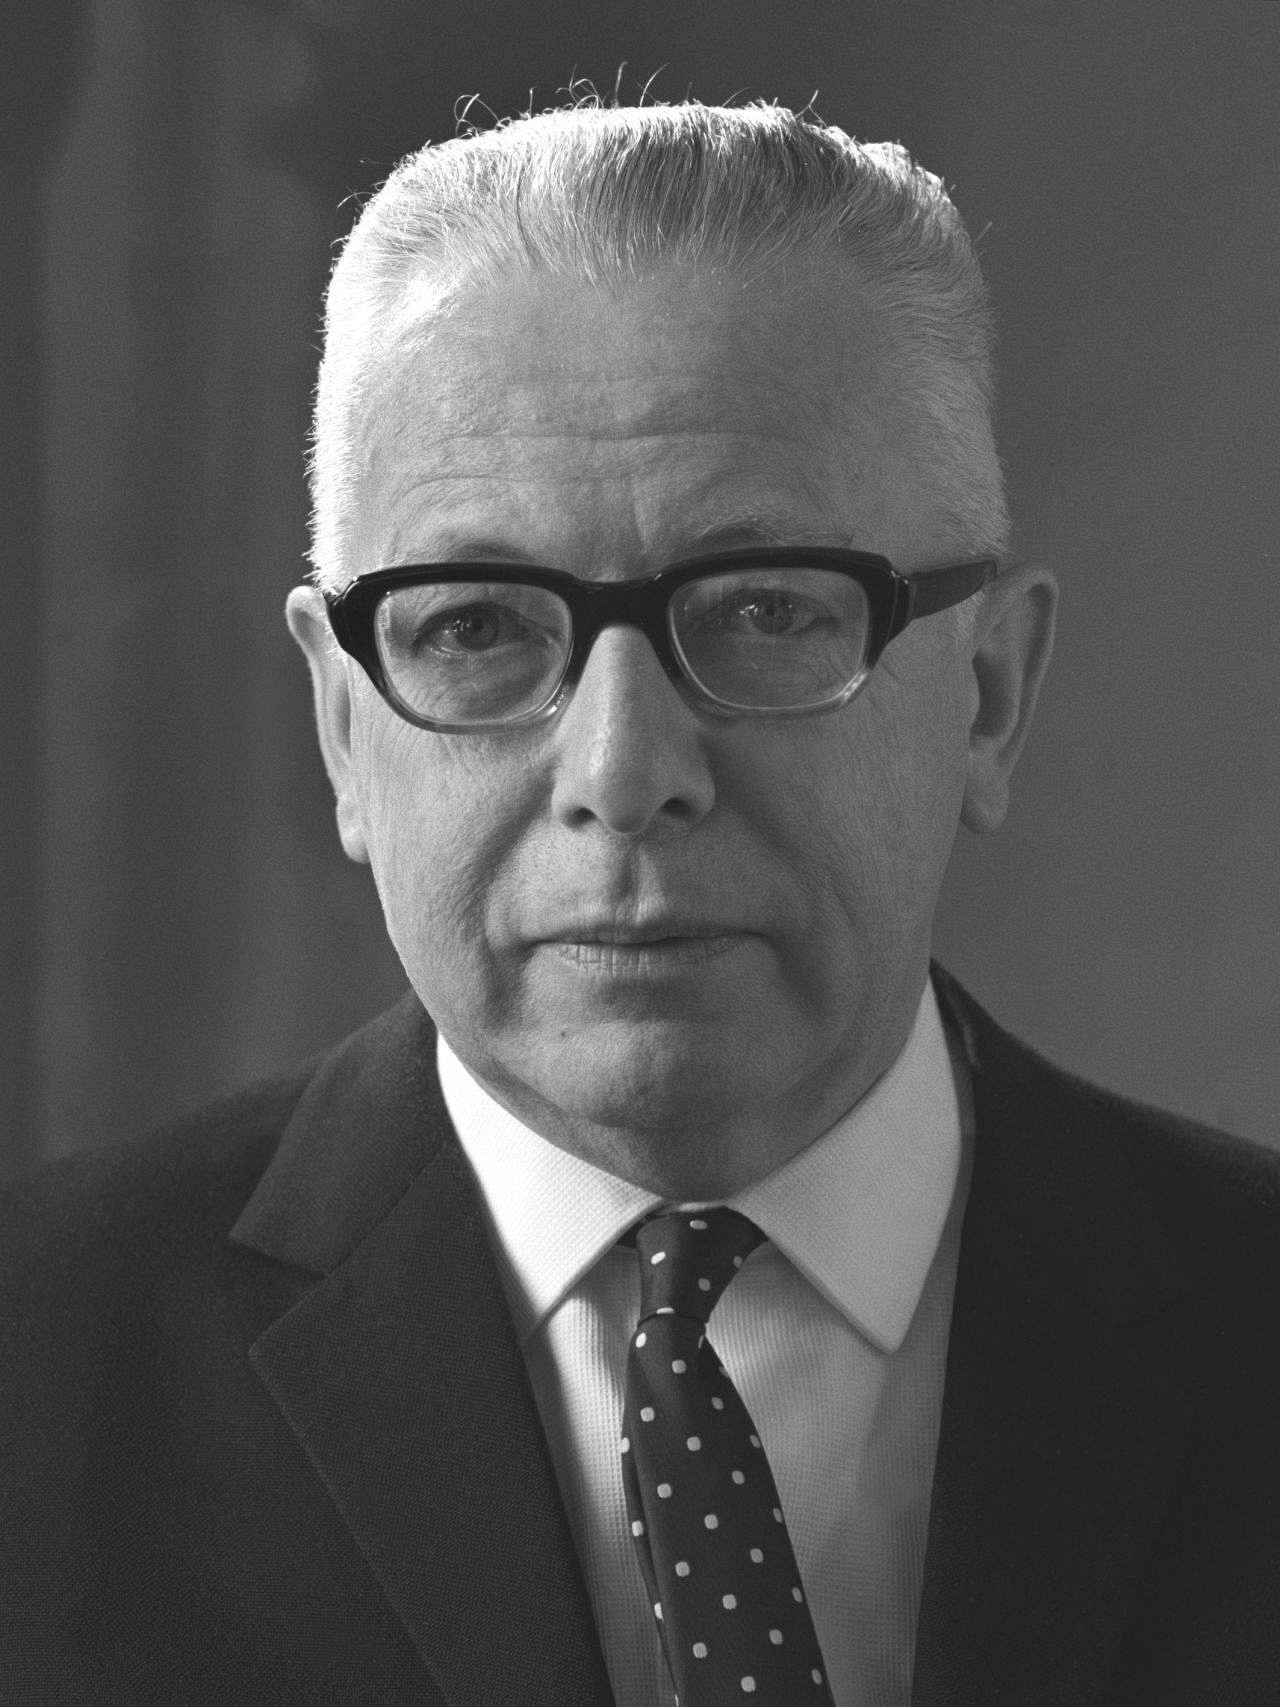 Offizielles Porträt von Gustav Heinemann, Bundespräsident der Bundesrepublik Deutschland (1969-1974) und Bundesminister der Justiz (1966-1969).